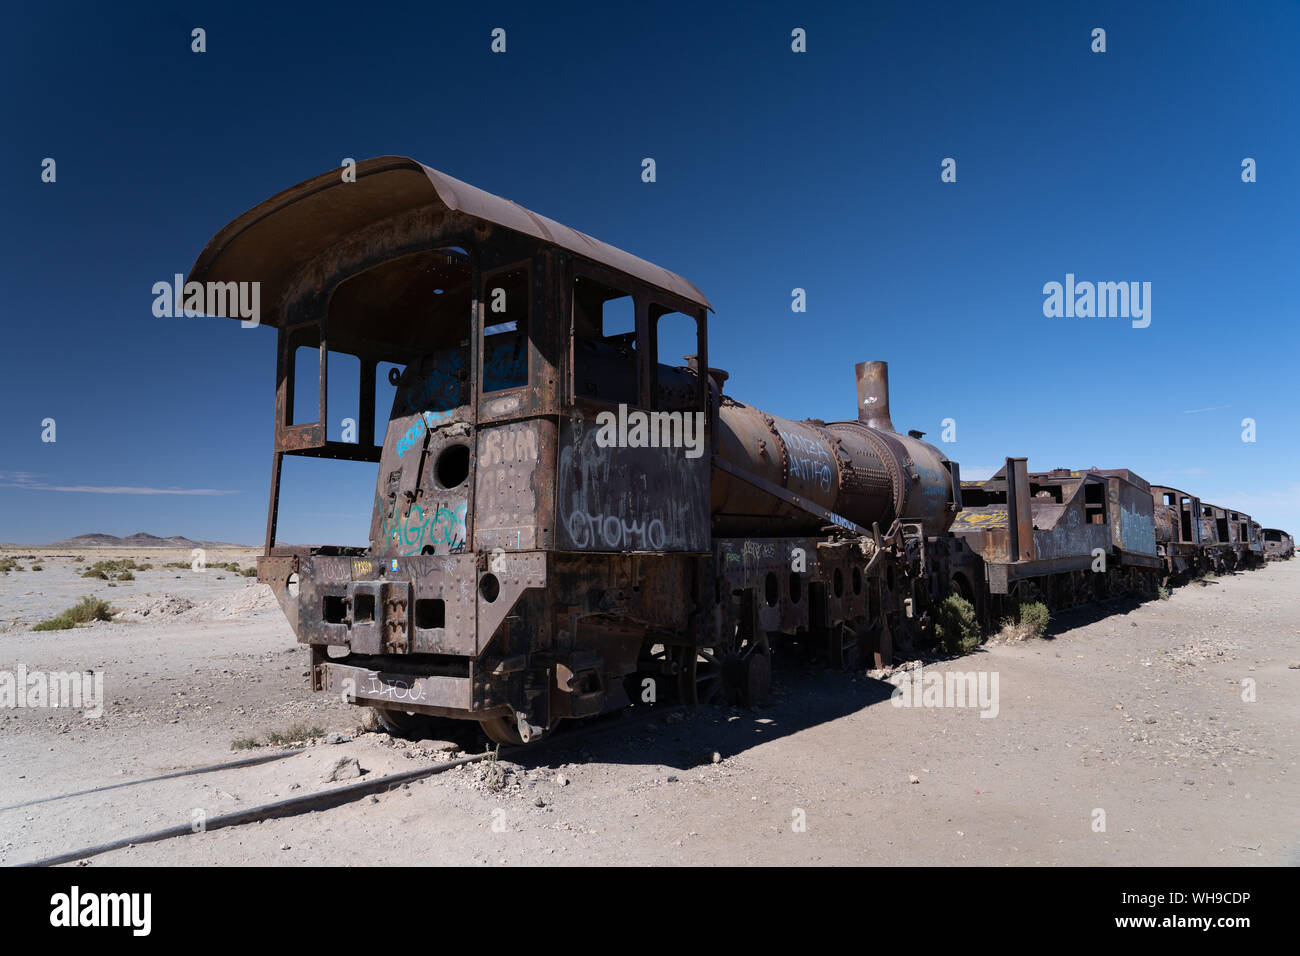 Cimetière de locomotives en dehors de Uyuni, Bolivie, Amérique du Sud Banque D'Images